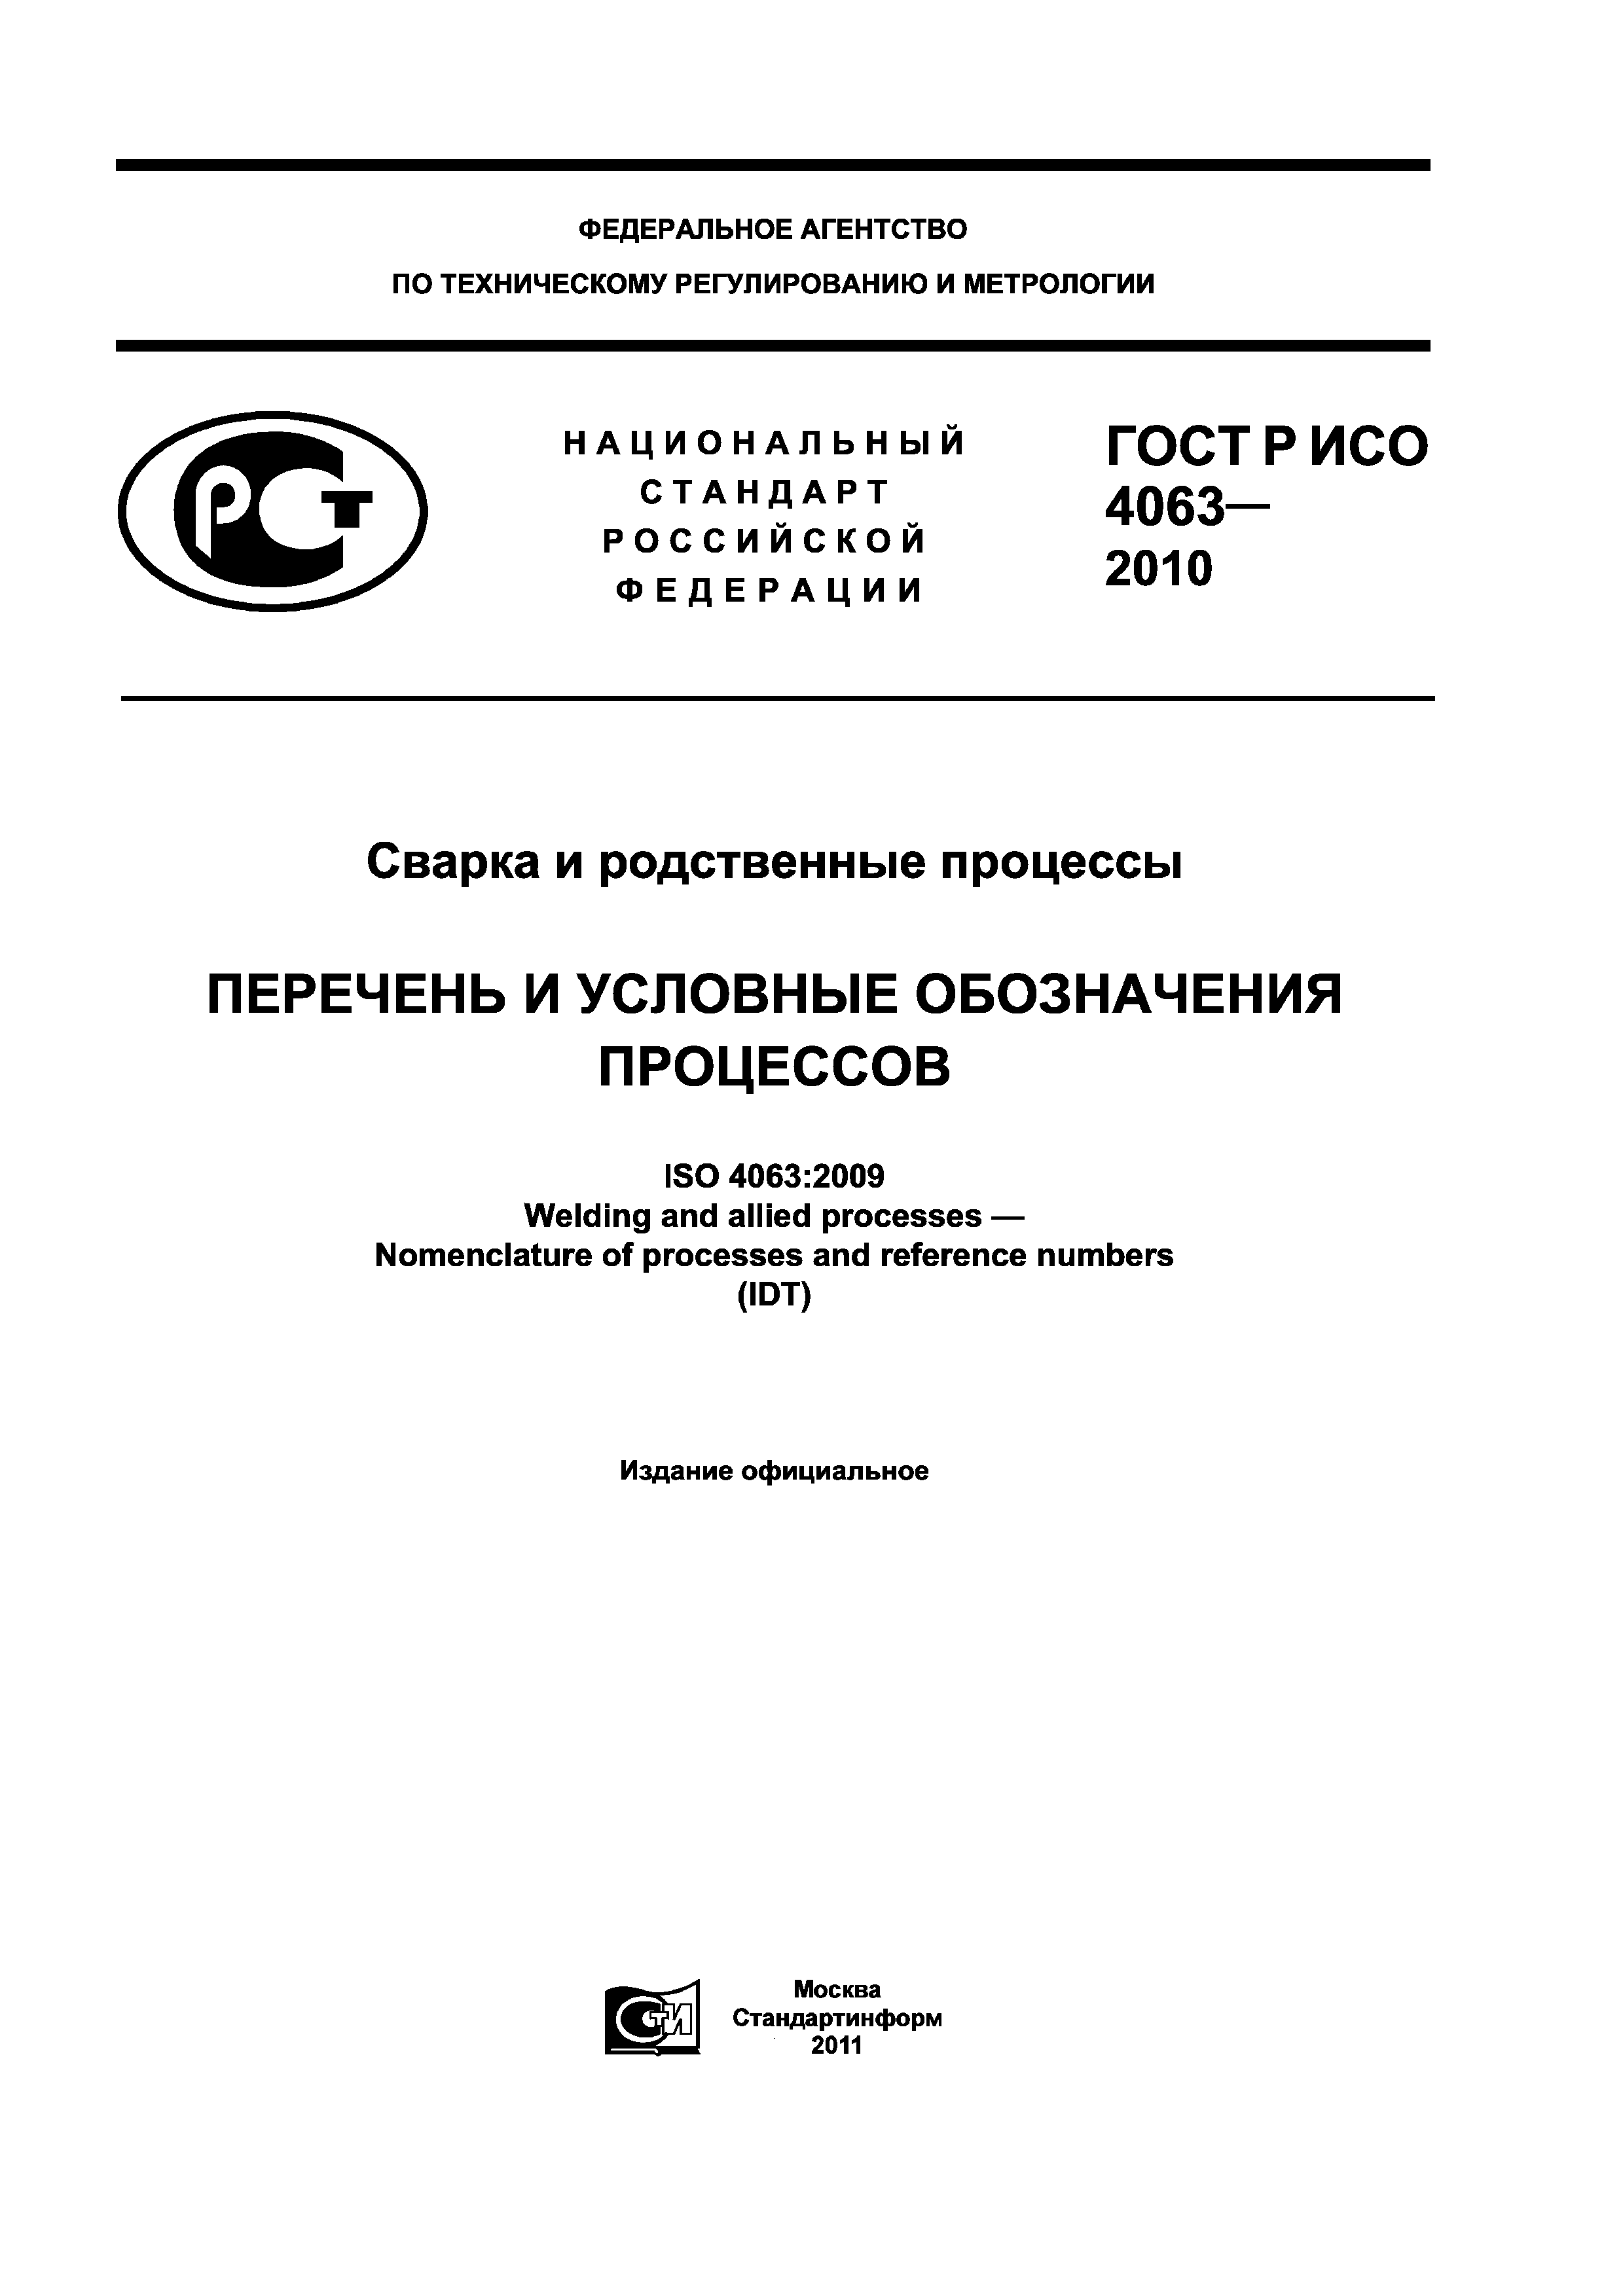 ГОСТ Р ИСО 4063-2010